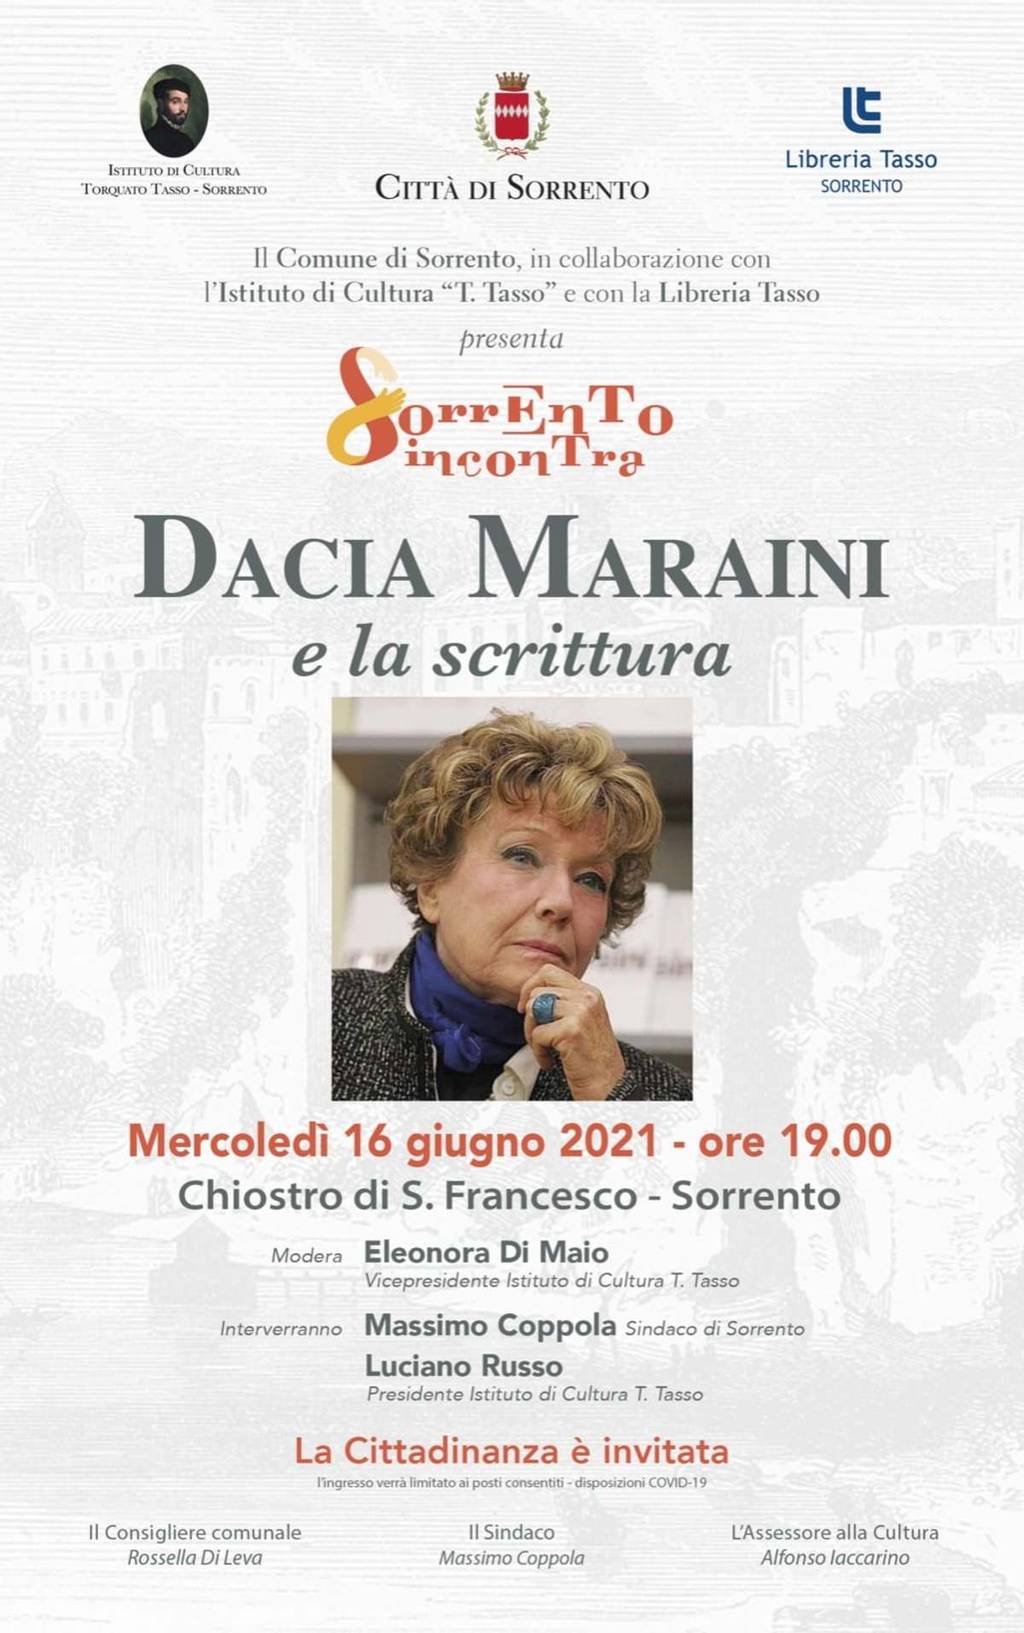 Dacia Maraini e la scrittura